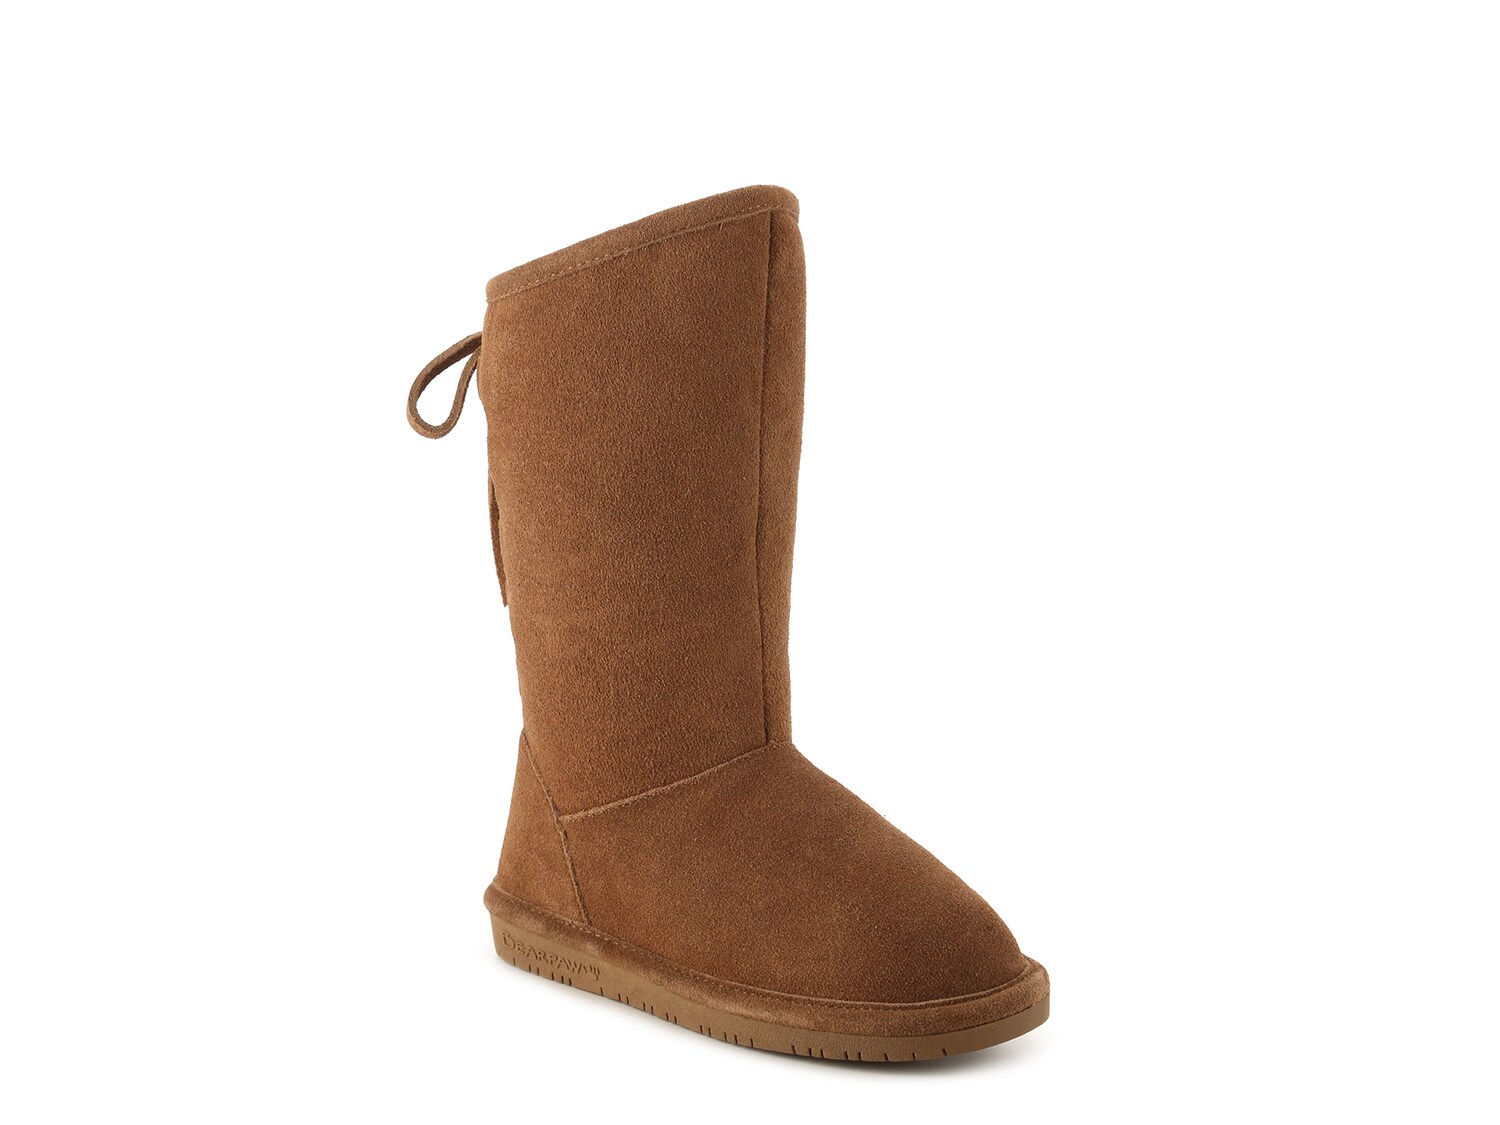 women's bogs winter boots size 8